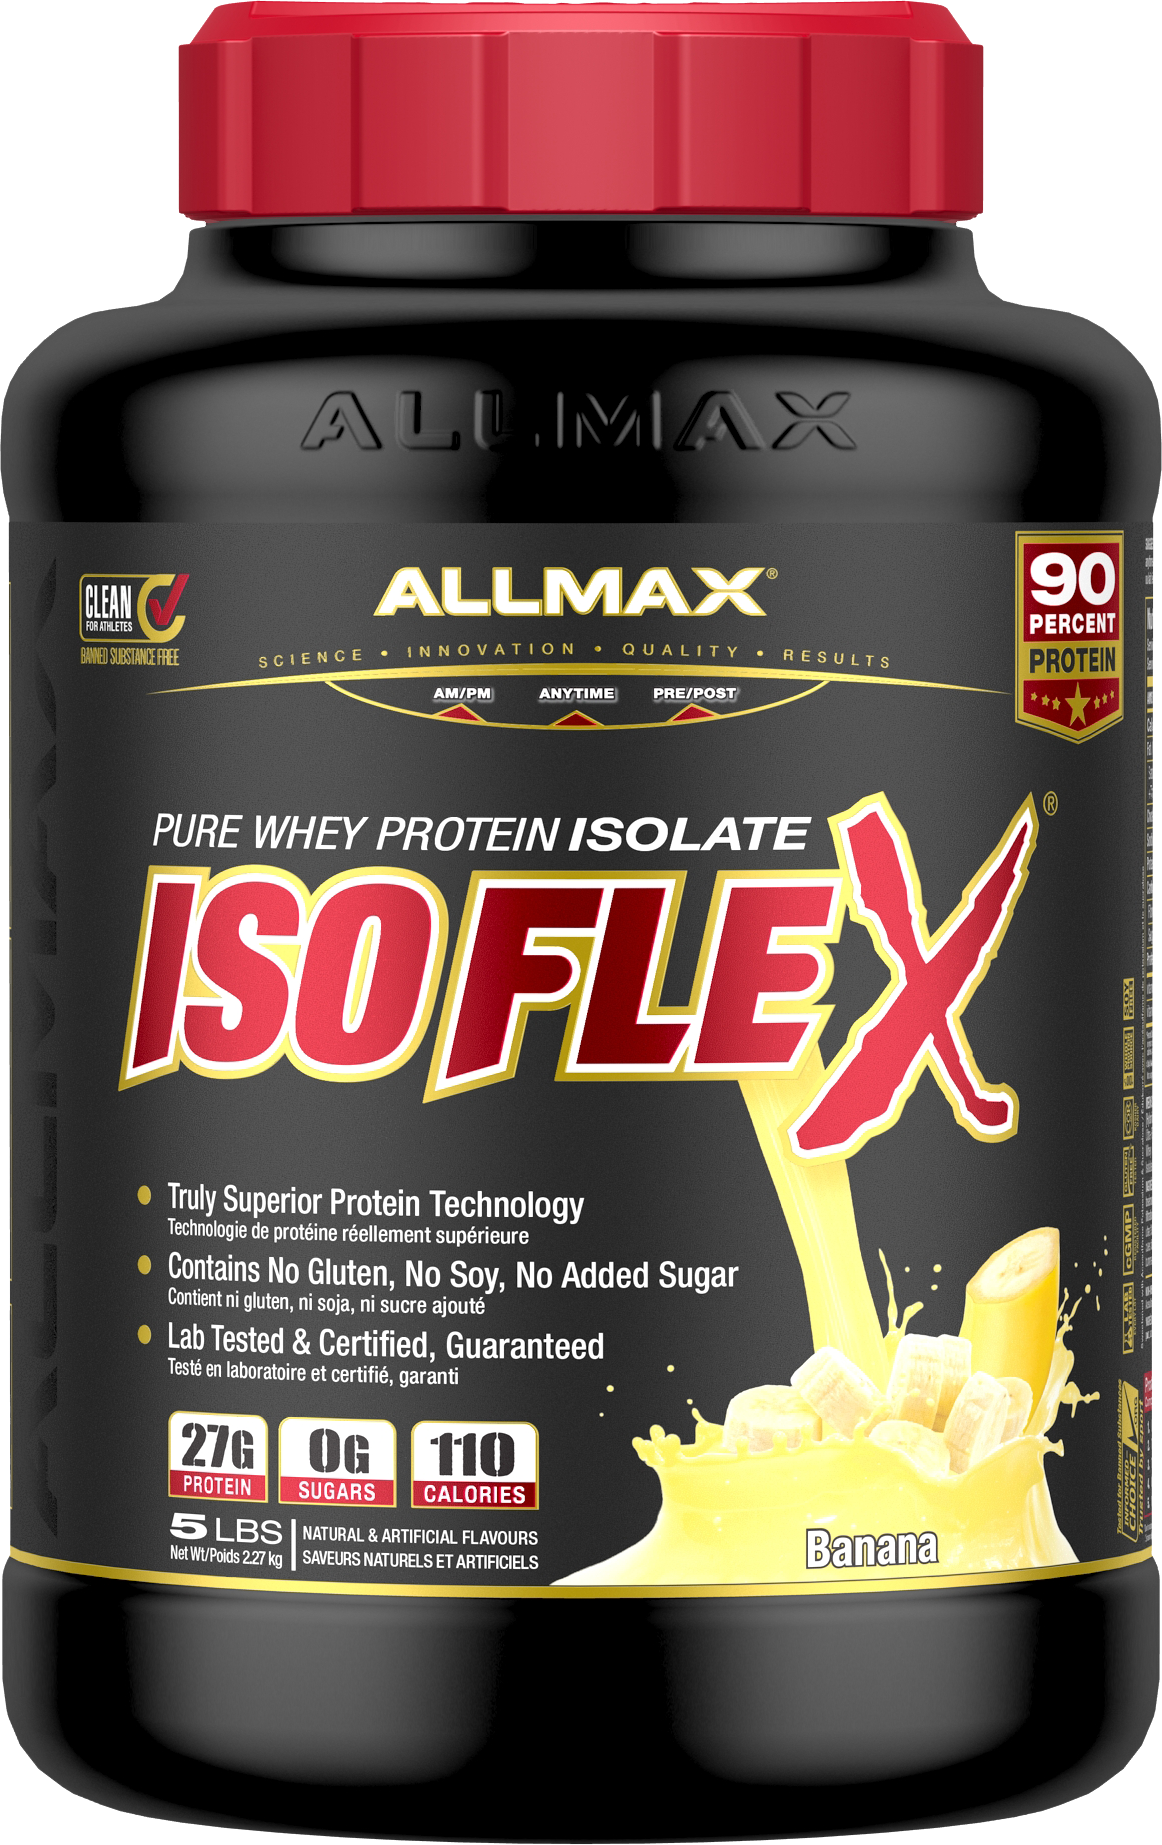 BODYFLEX FITNESS T-ANABOL 300, Bodyflex Nutrition – ApoZona